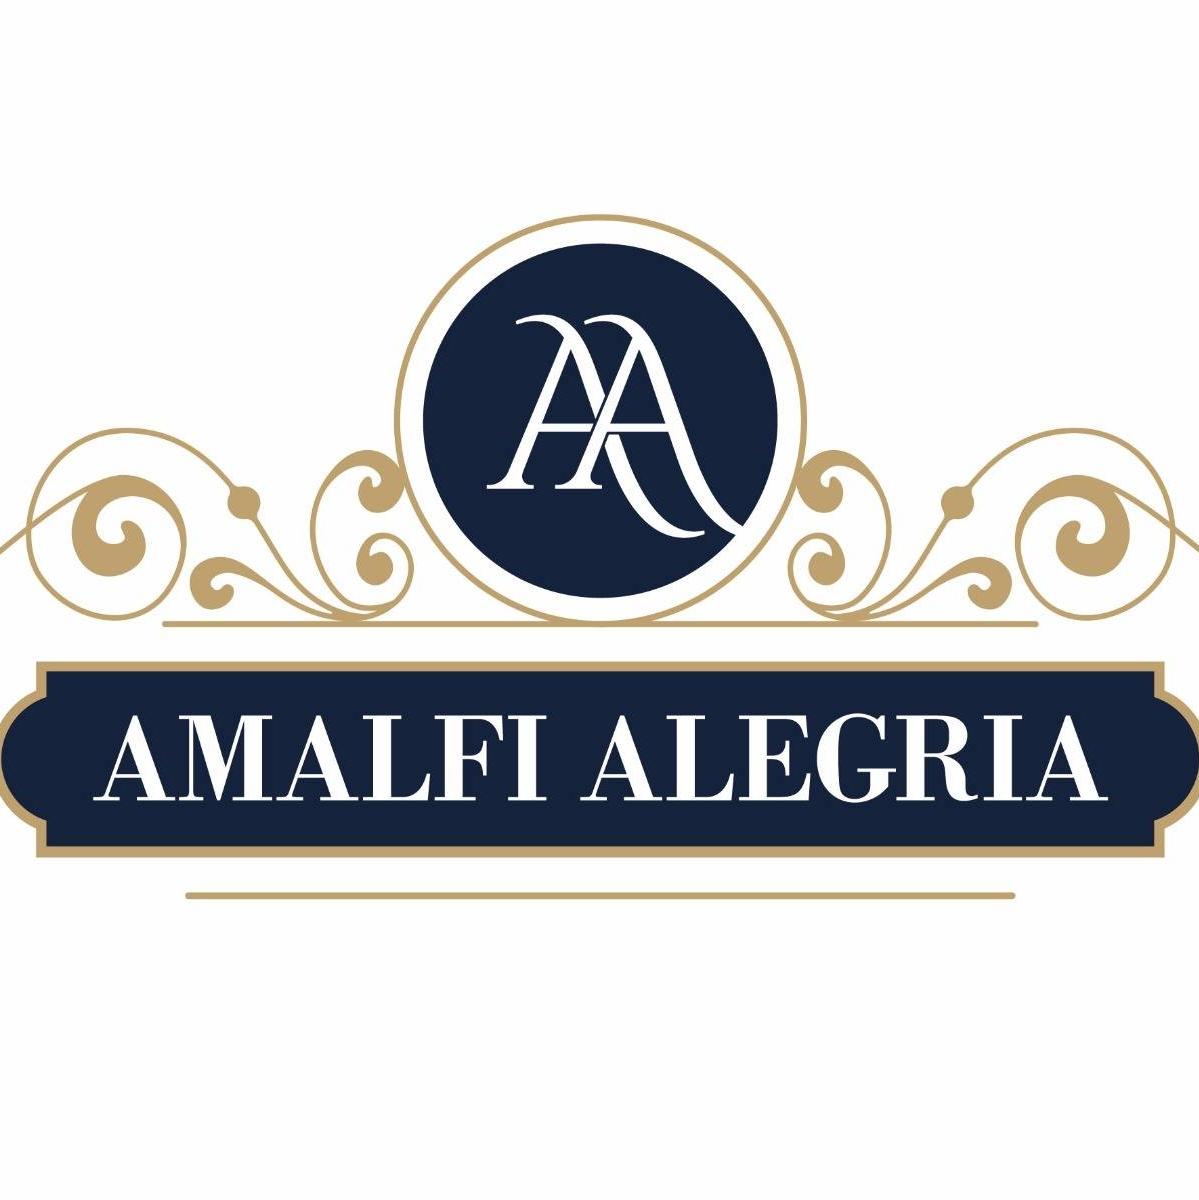 Amalfi Alegria